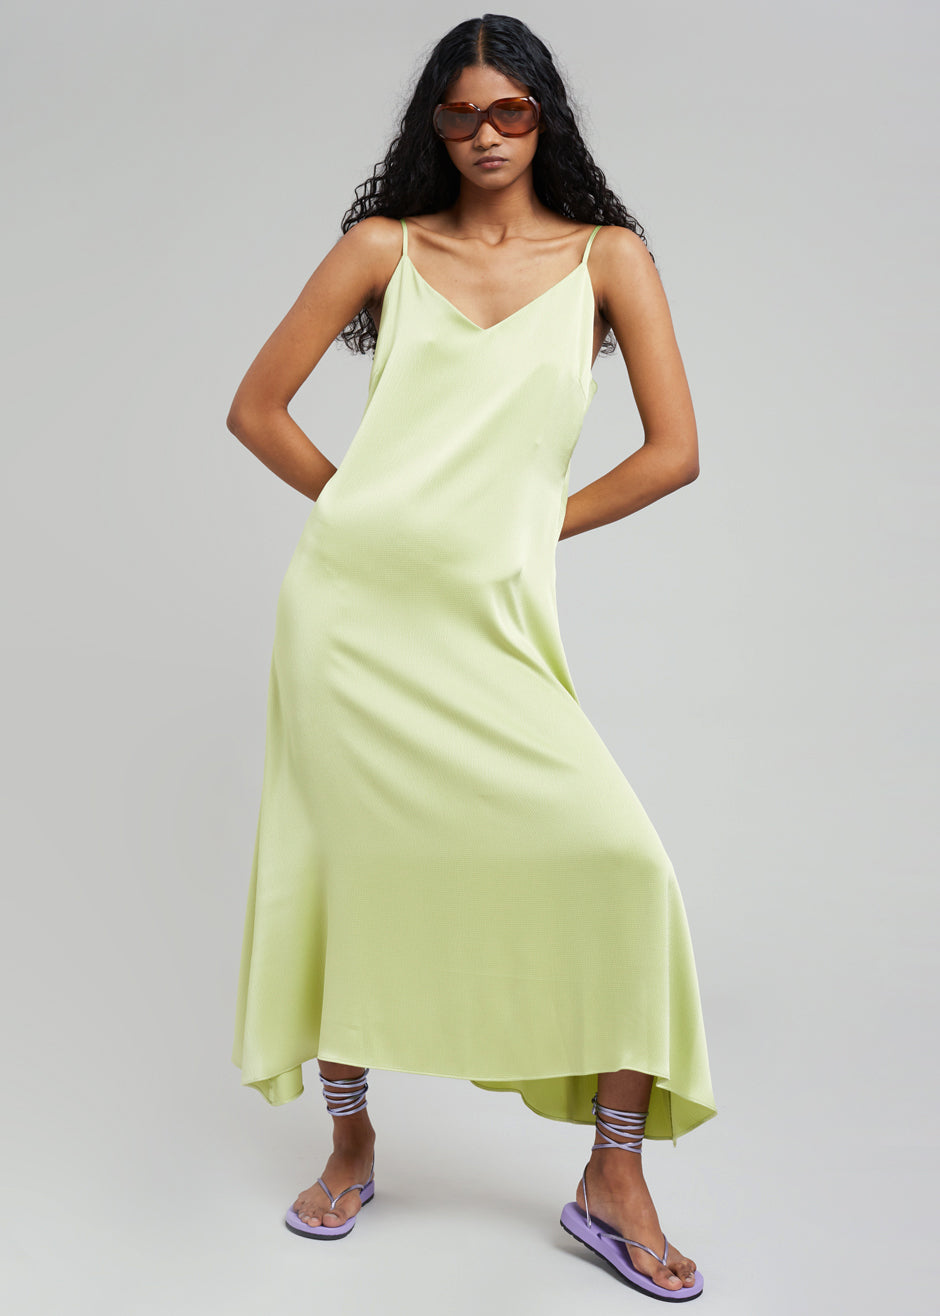 Cordelia Satin Dress - Lime - 4